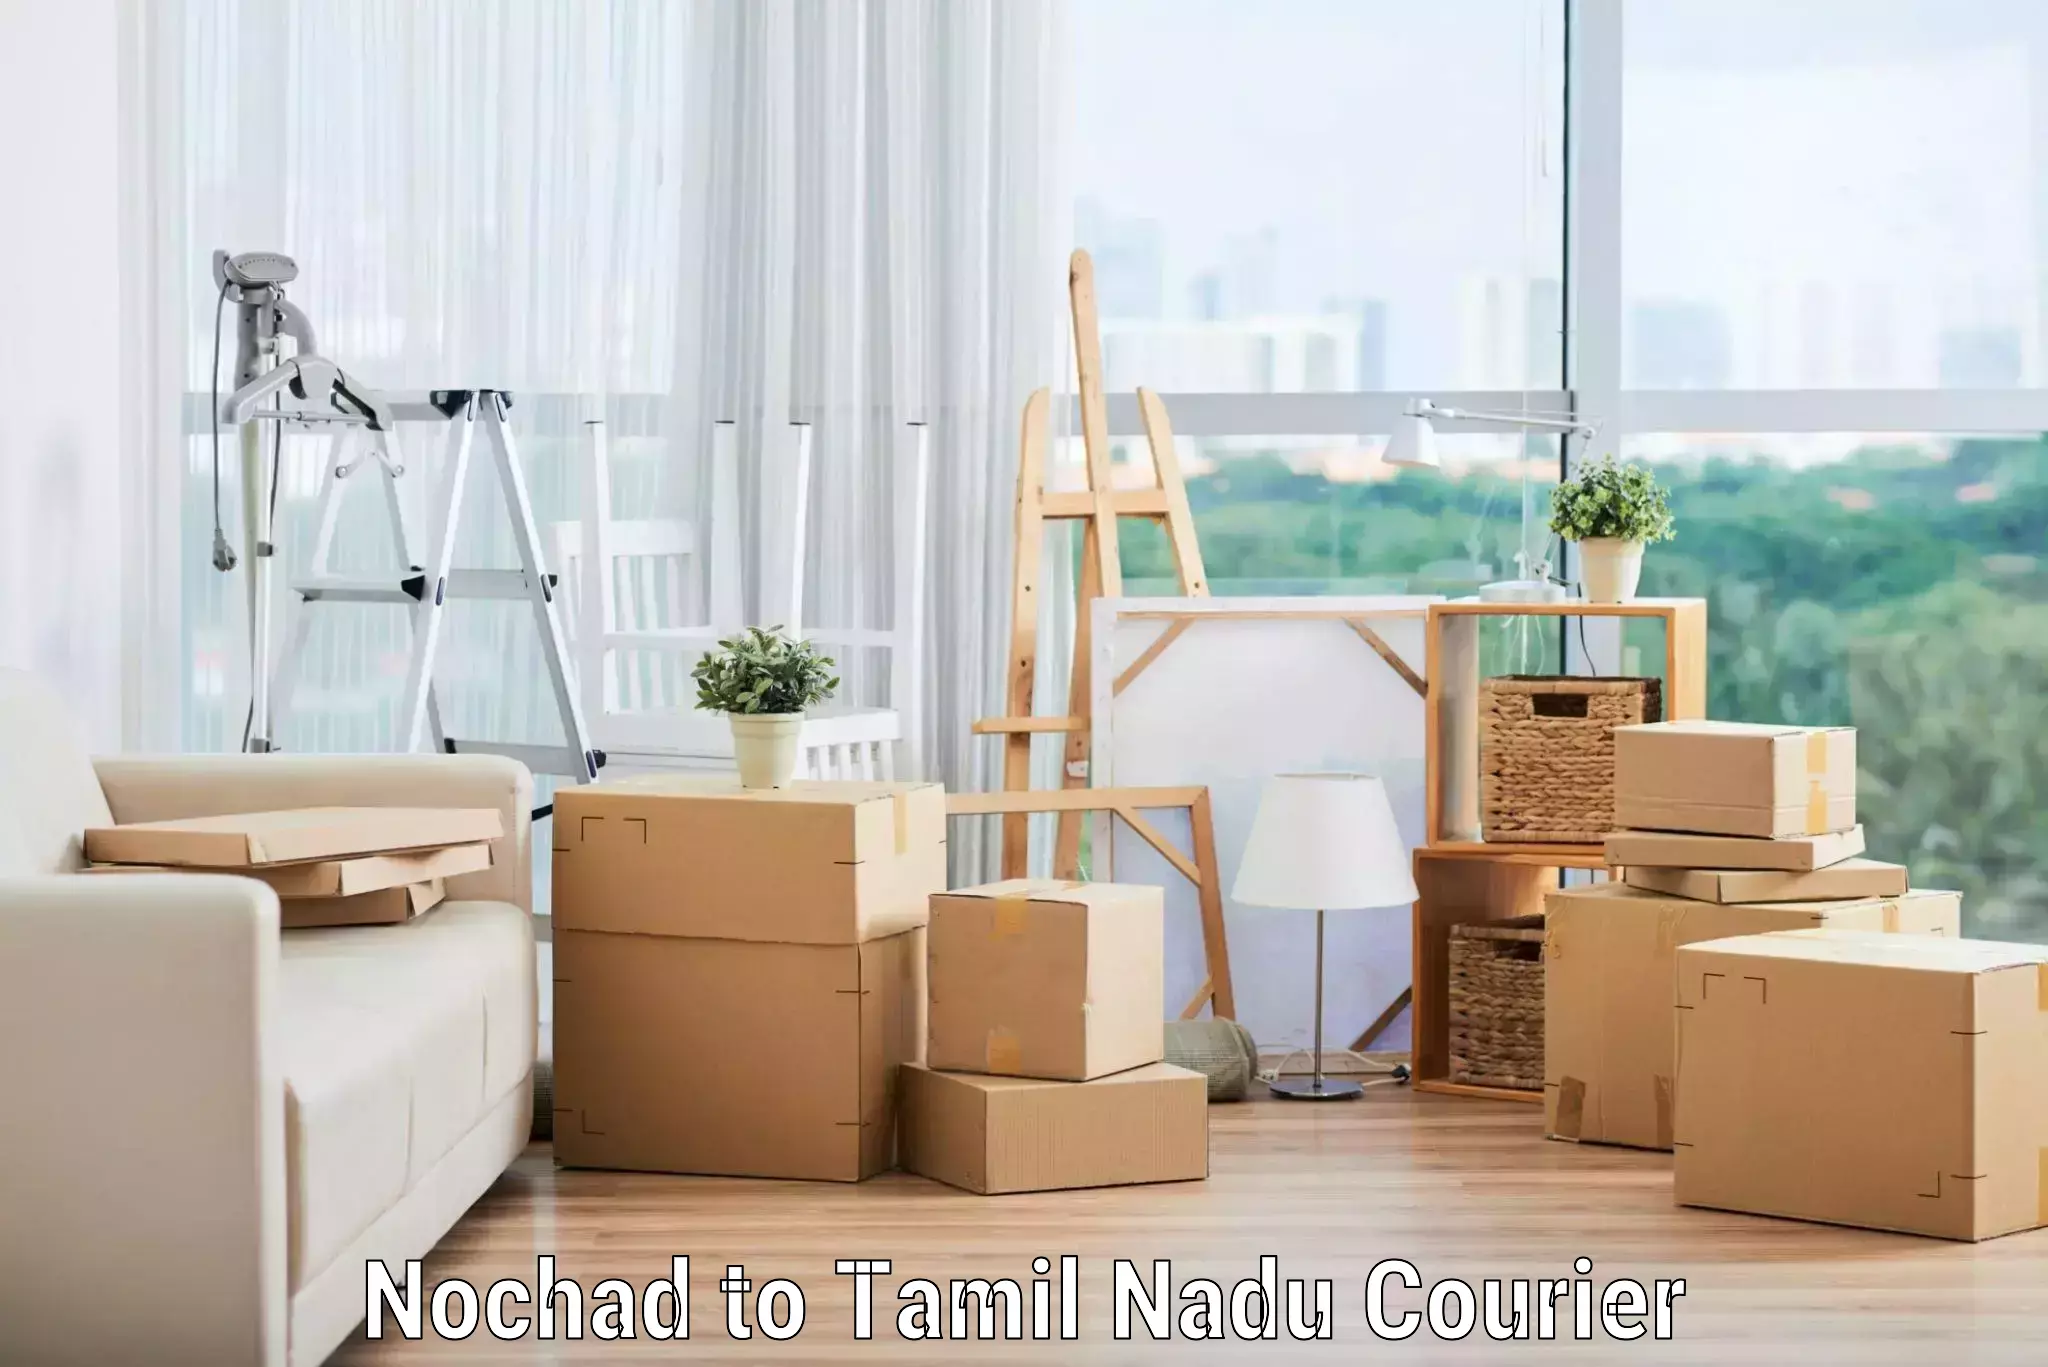 Reliable home shifting Nochad to Chennai Port